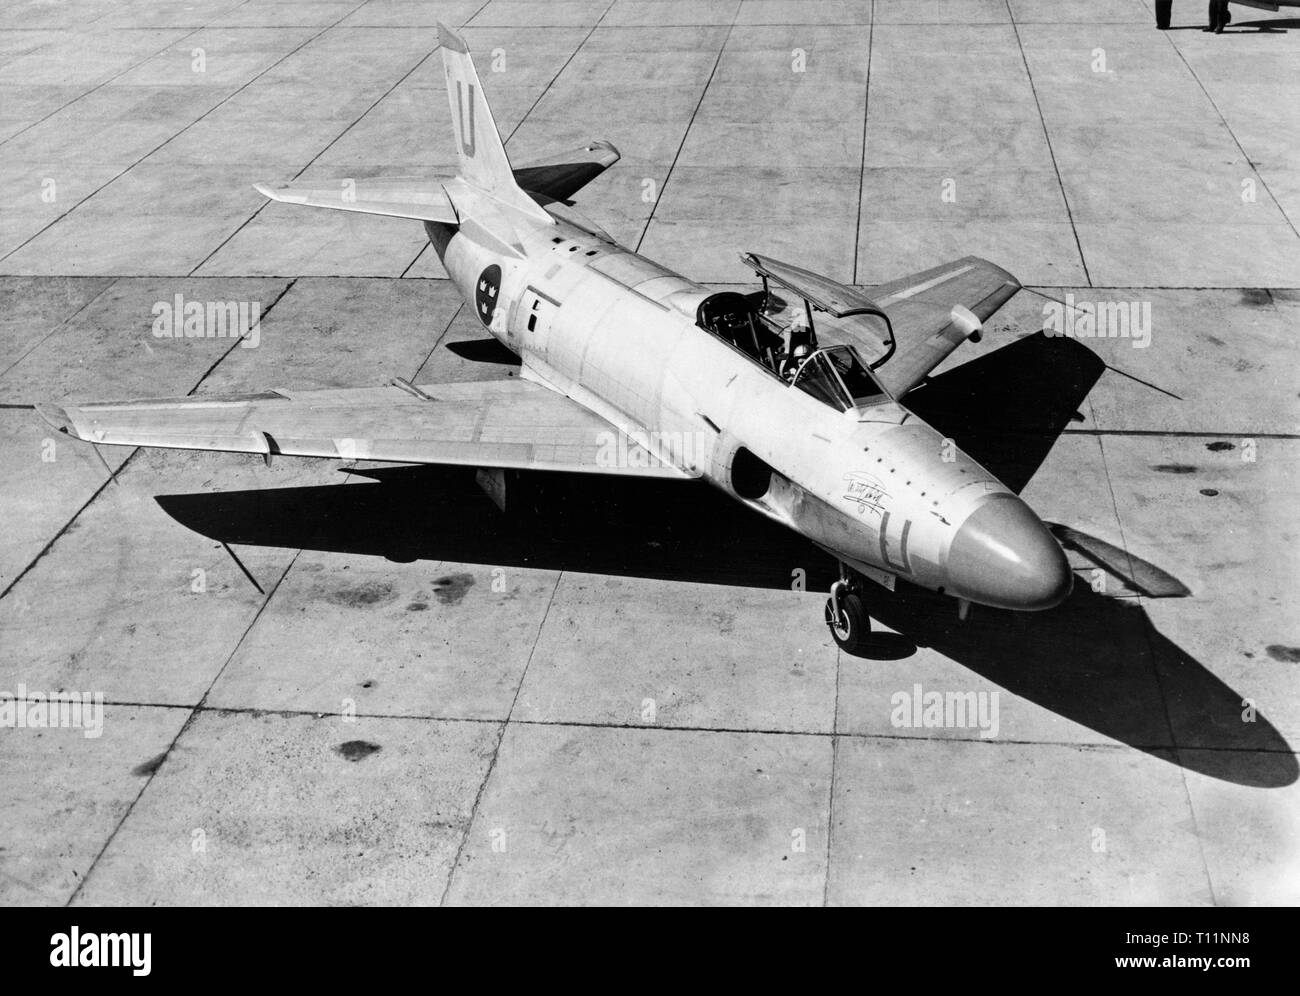 Saab 32 Lansen, un avion de chasse suédois à deux sièges d'avions militaires transsoniques, conçus et fabriqués par Saab de 1955 à 1960 pour l'Armée de l'air suédoise. Banque D'Images